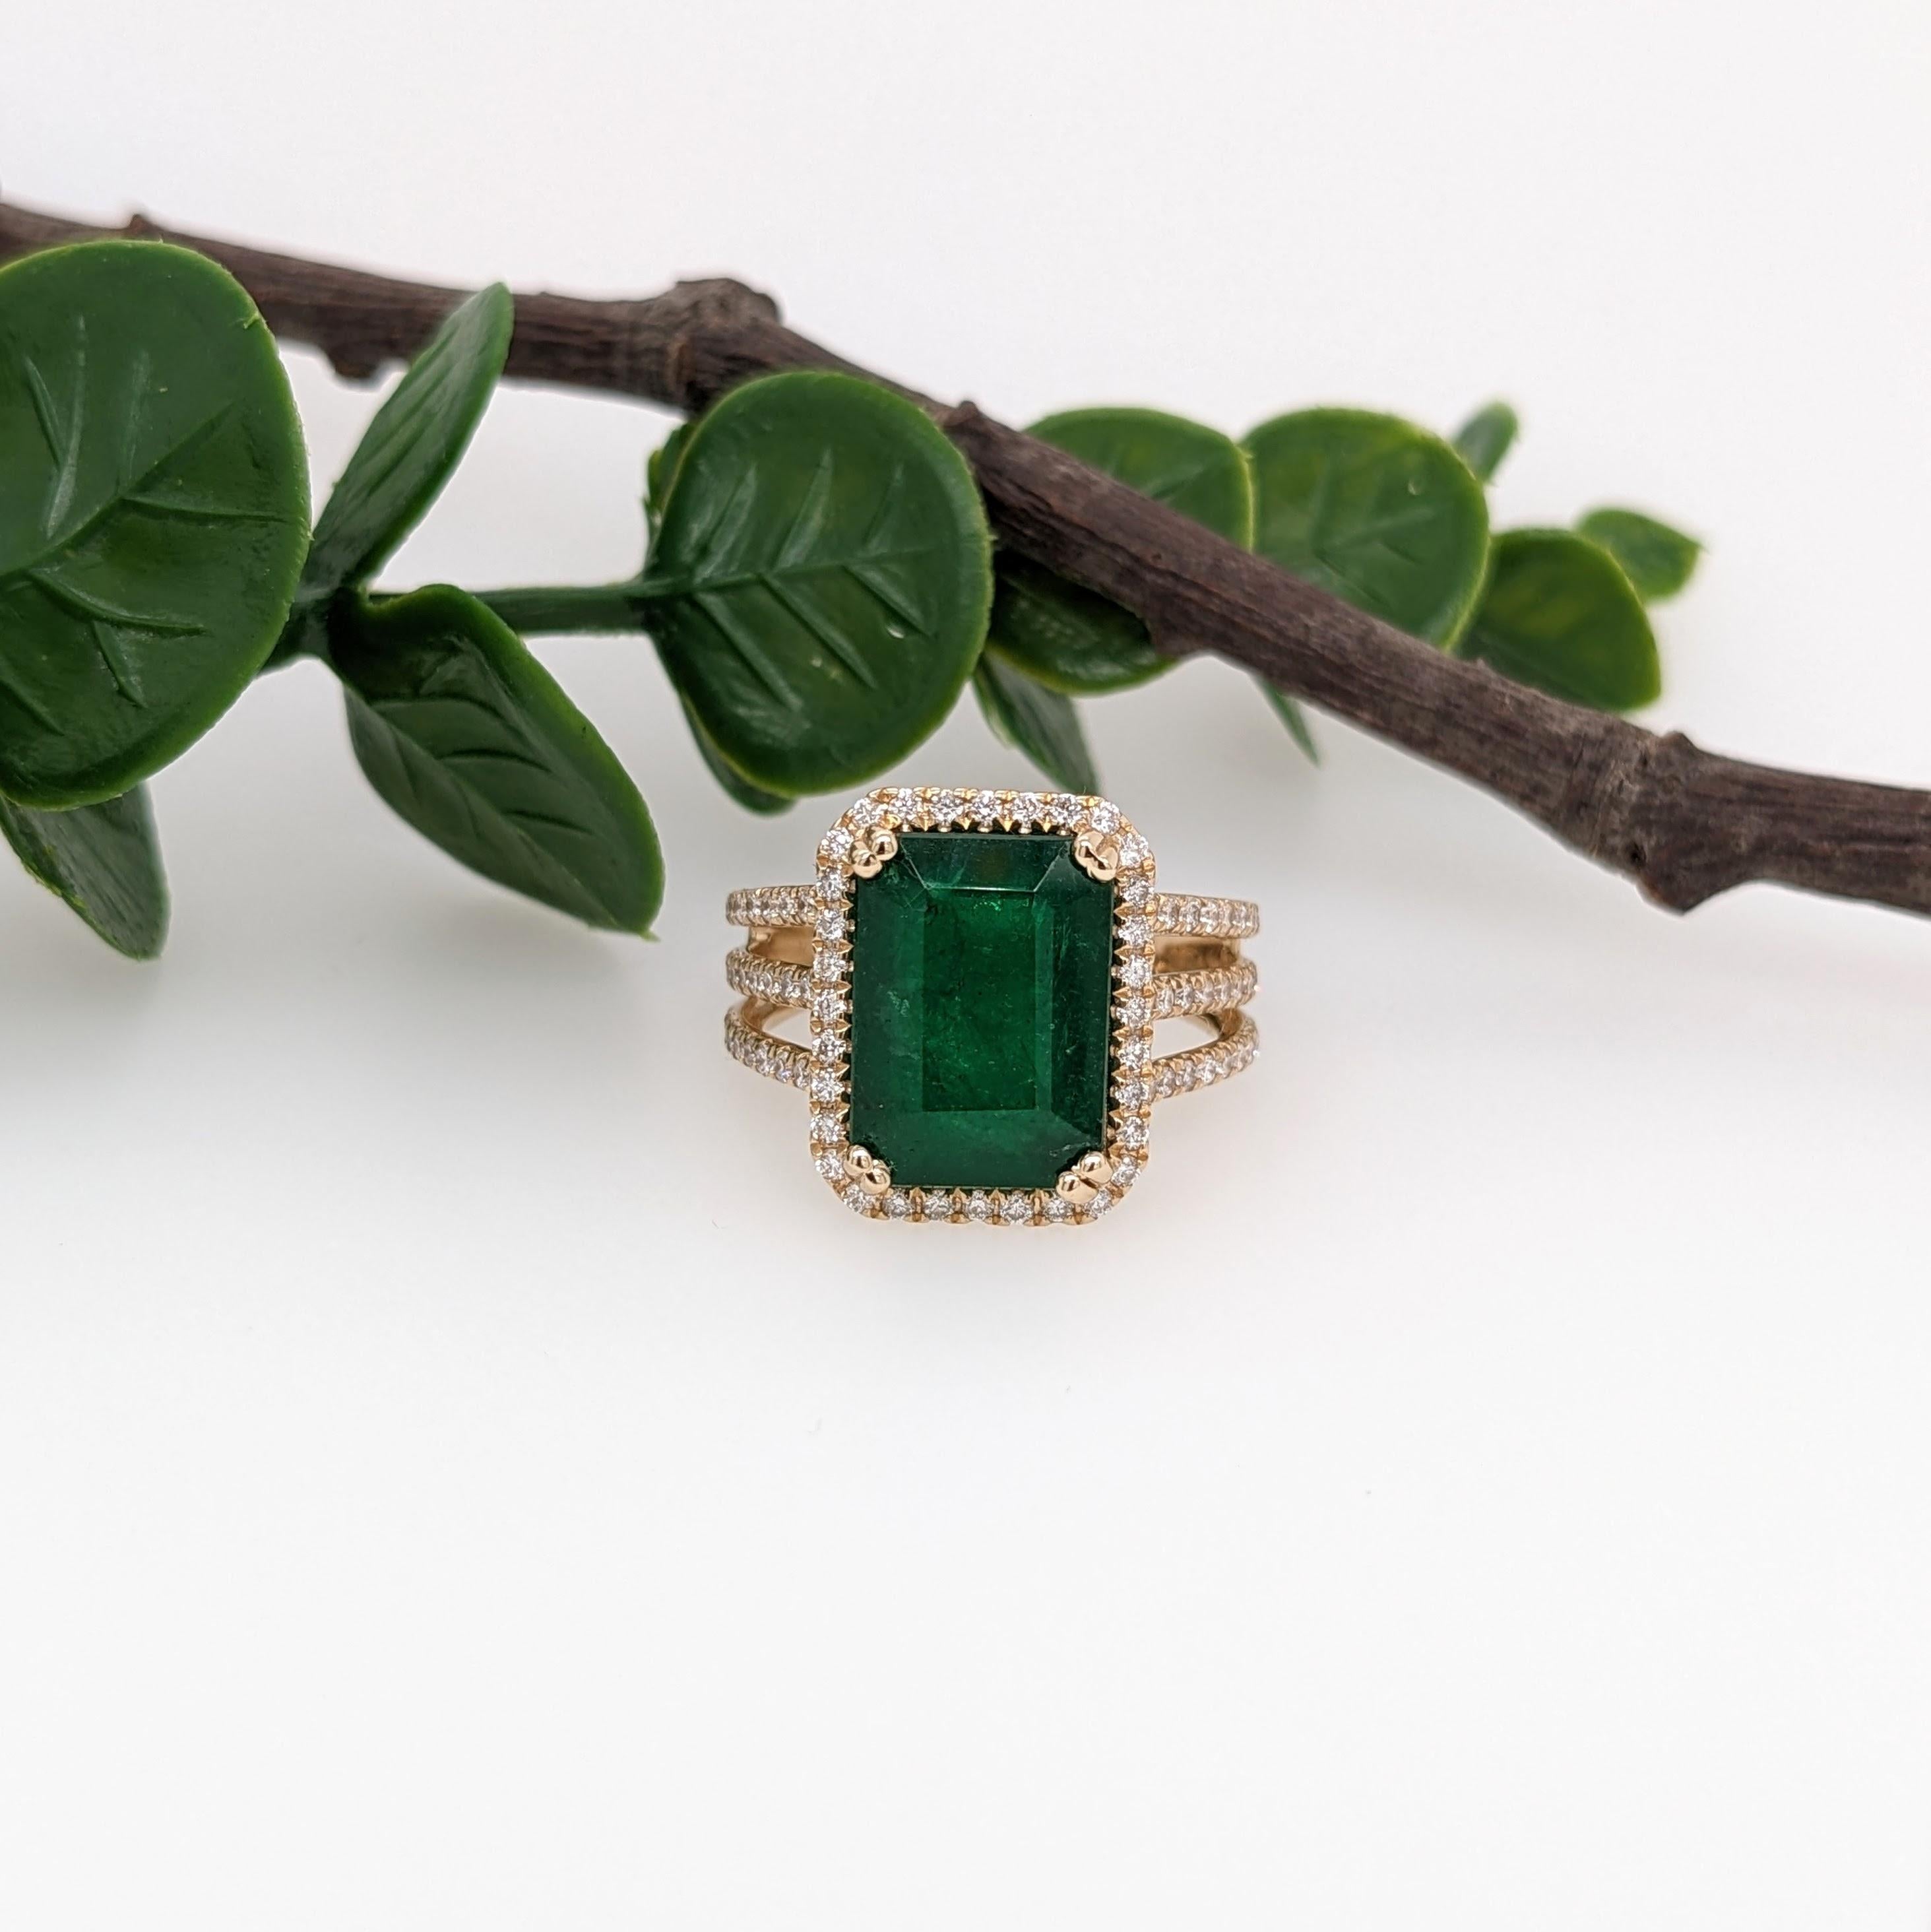 Ein wunderschöner Ring mit einem wunderschönen tiefgrünen Smaragd, gefasst in massivem 14-karätigem Gelbgold mit natürlichen Diamanten. Genießen Sie ein bisschen mehr Glanz mit dem diamantbesetzten, geschichteten, geteilten Schaft! Ein